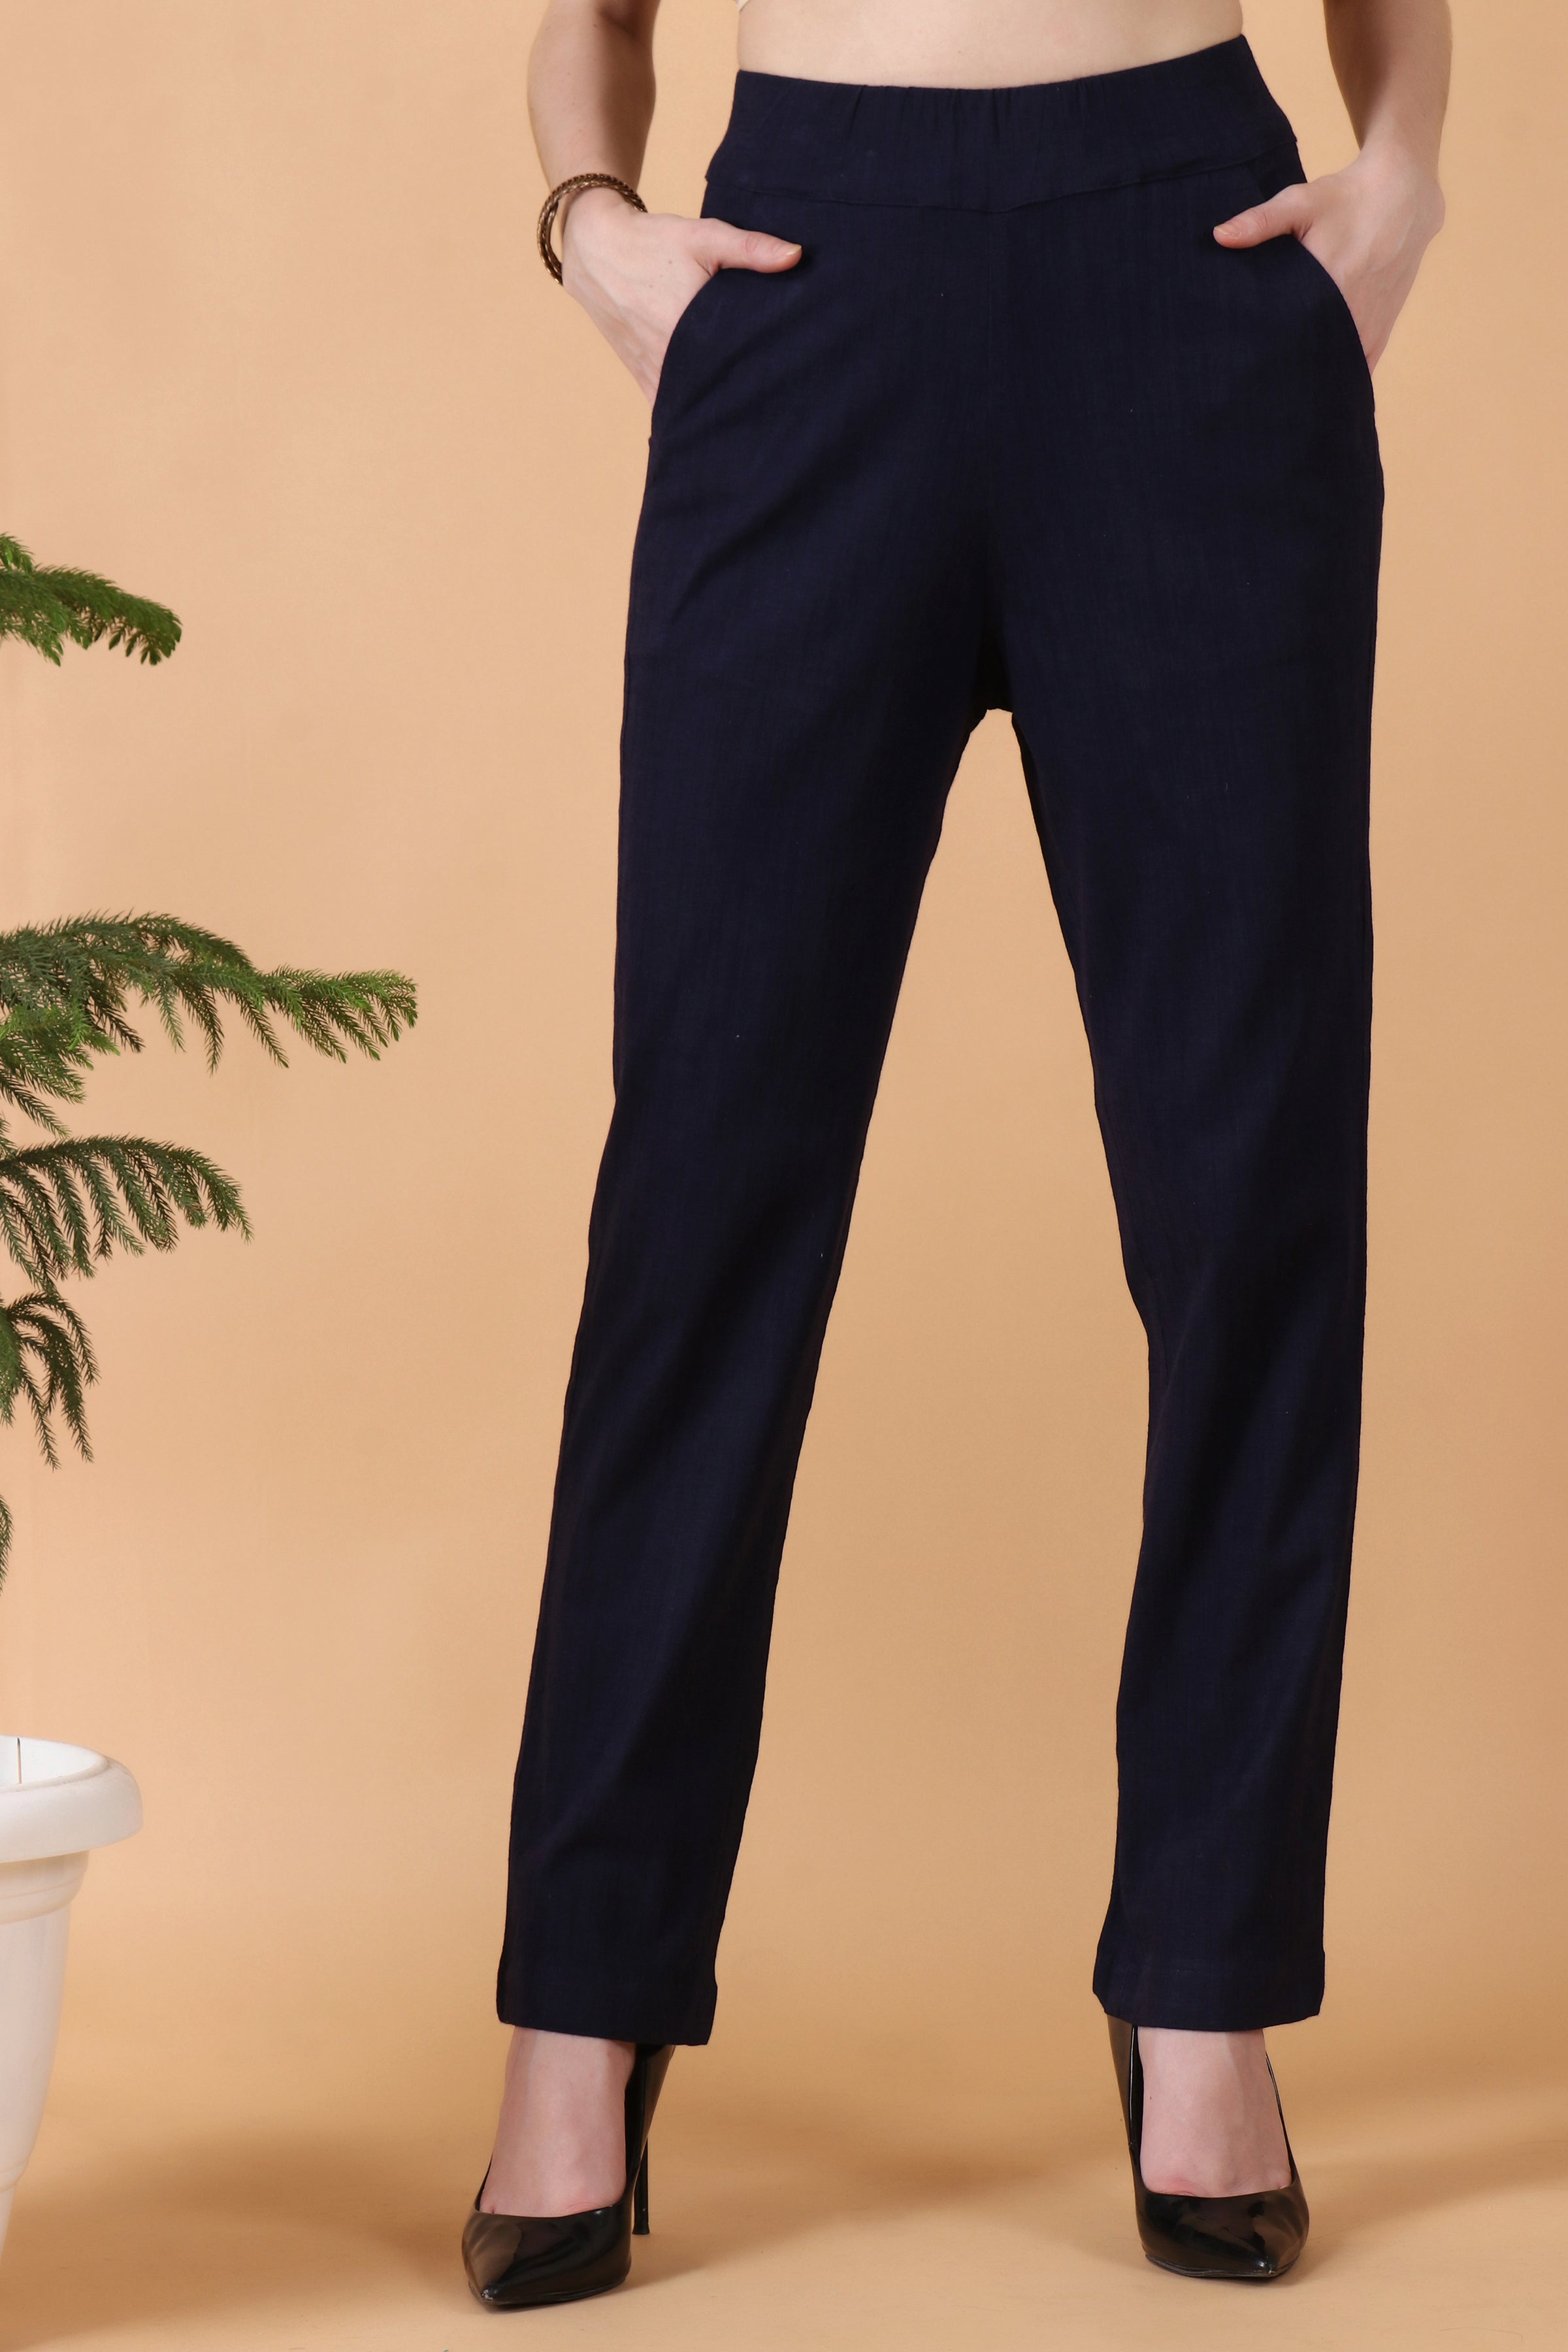 Men Black 4 Way Lycra Pant at best price in Surat by U K Fashion | ID:  2853297224297